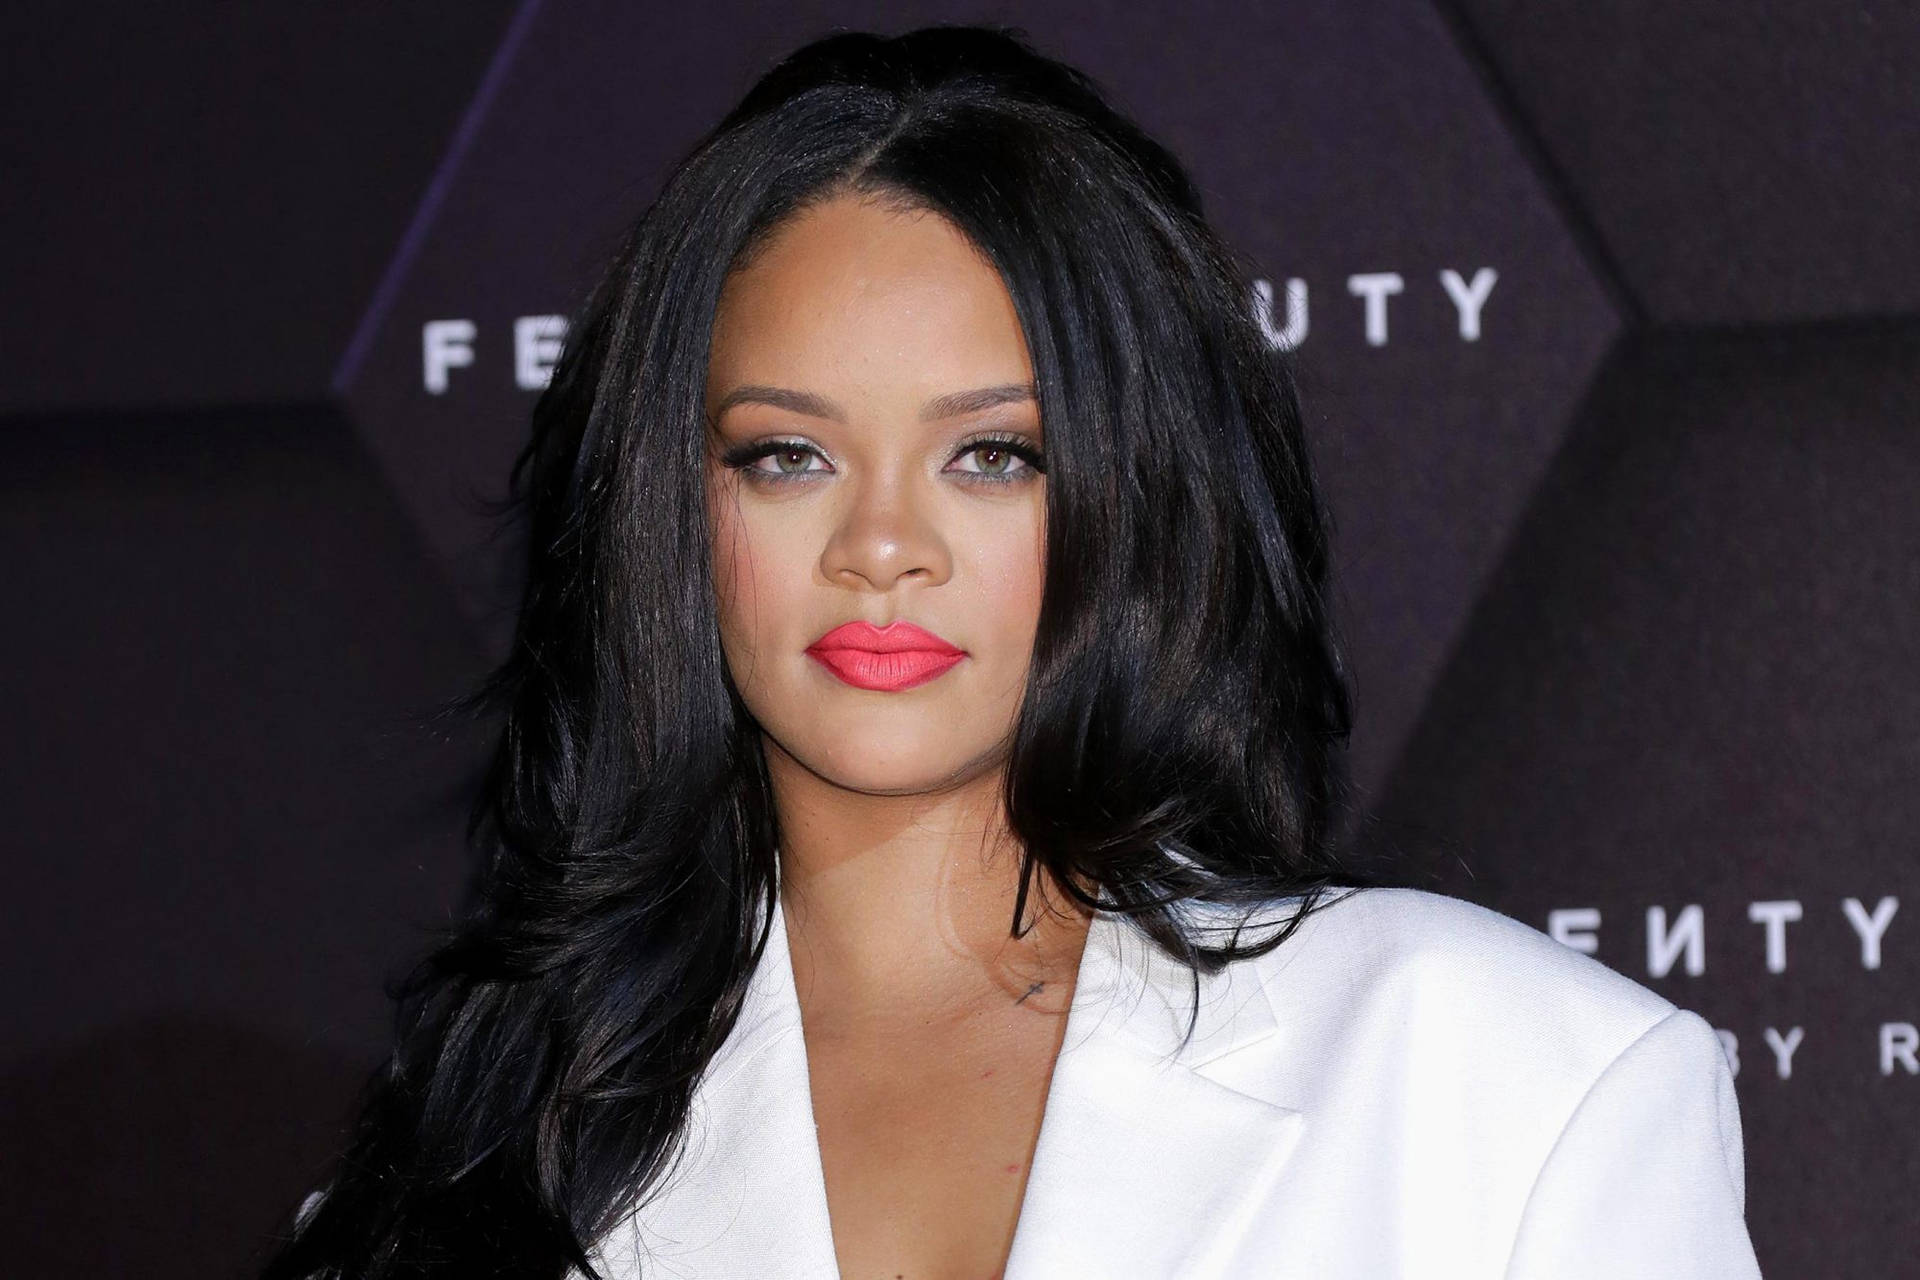 Rihanna In Fenty Fashion Show Background